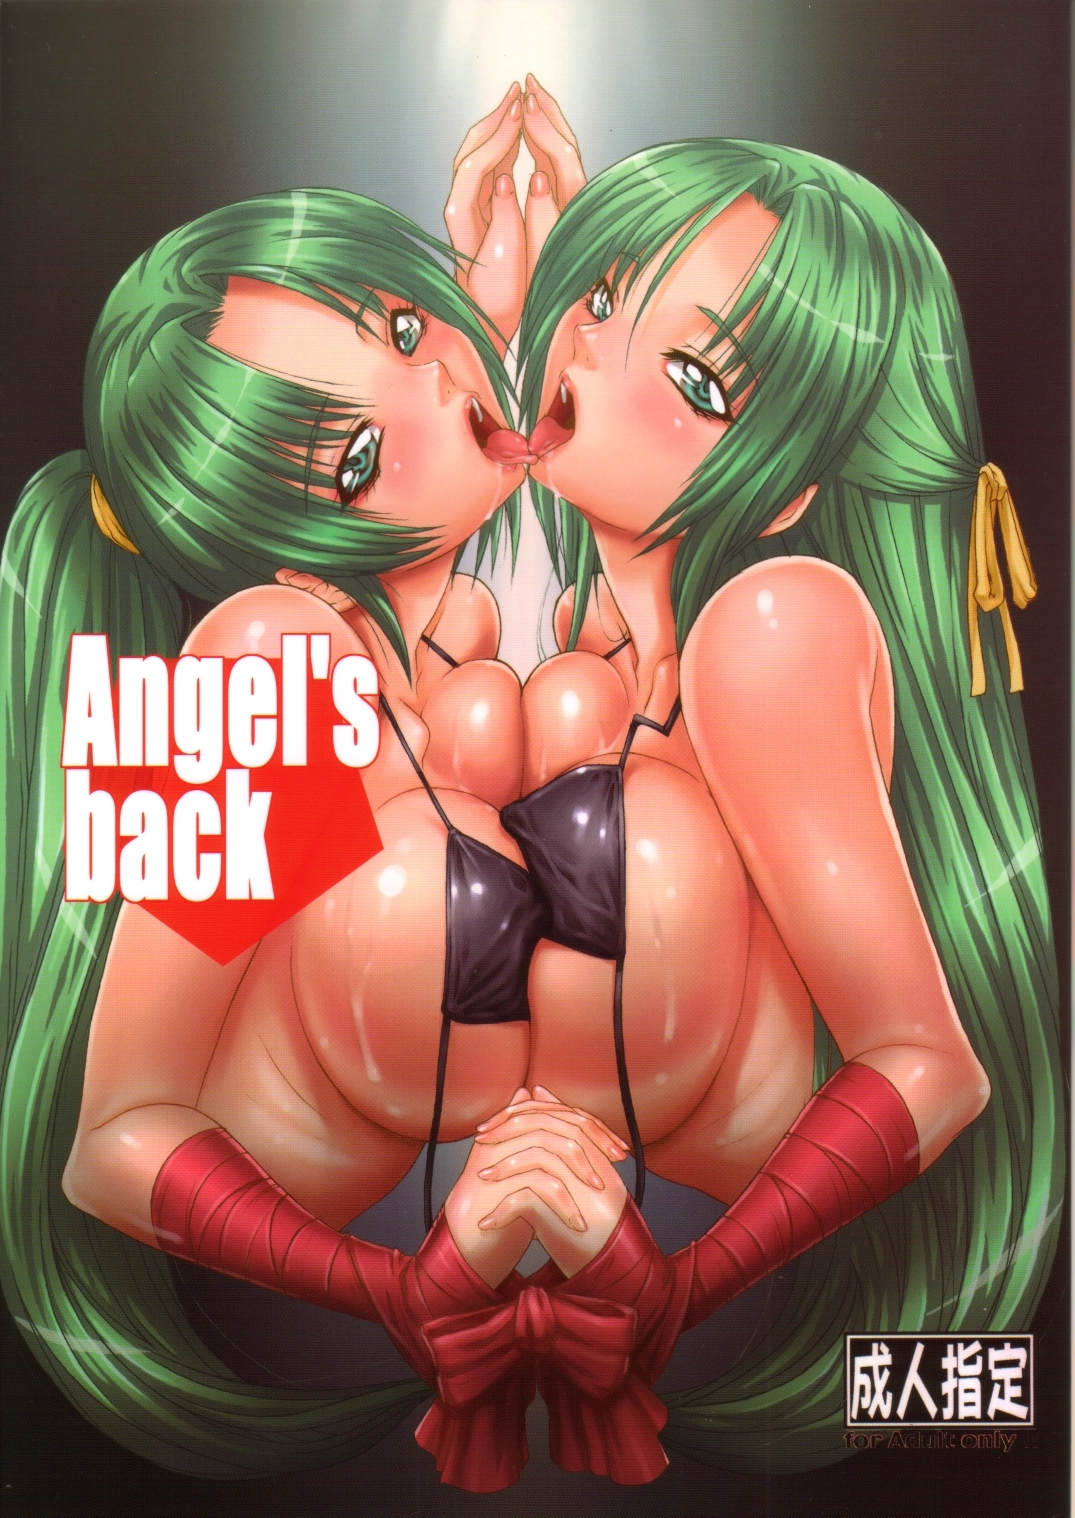 Angel's back higurashi no naku koro ni hentai manga